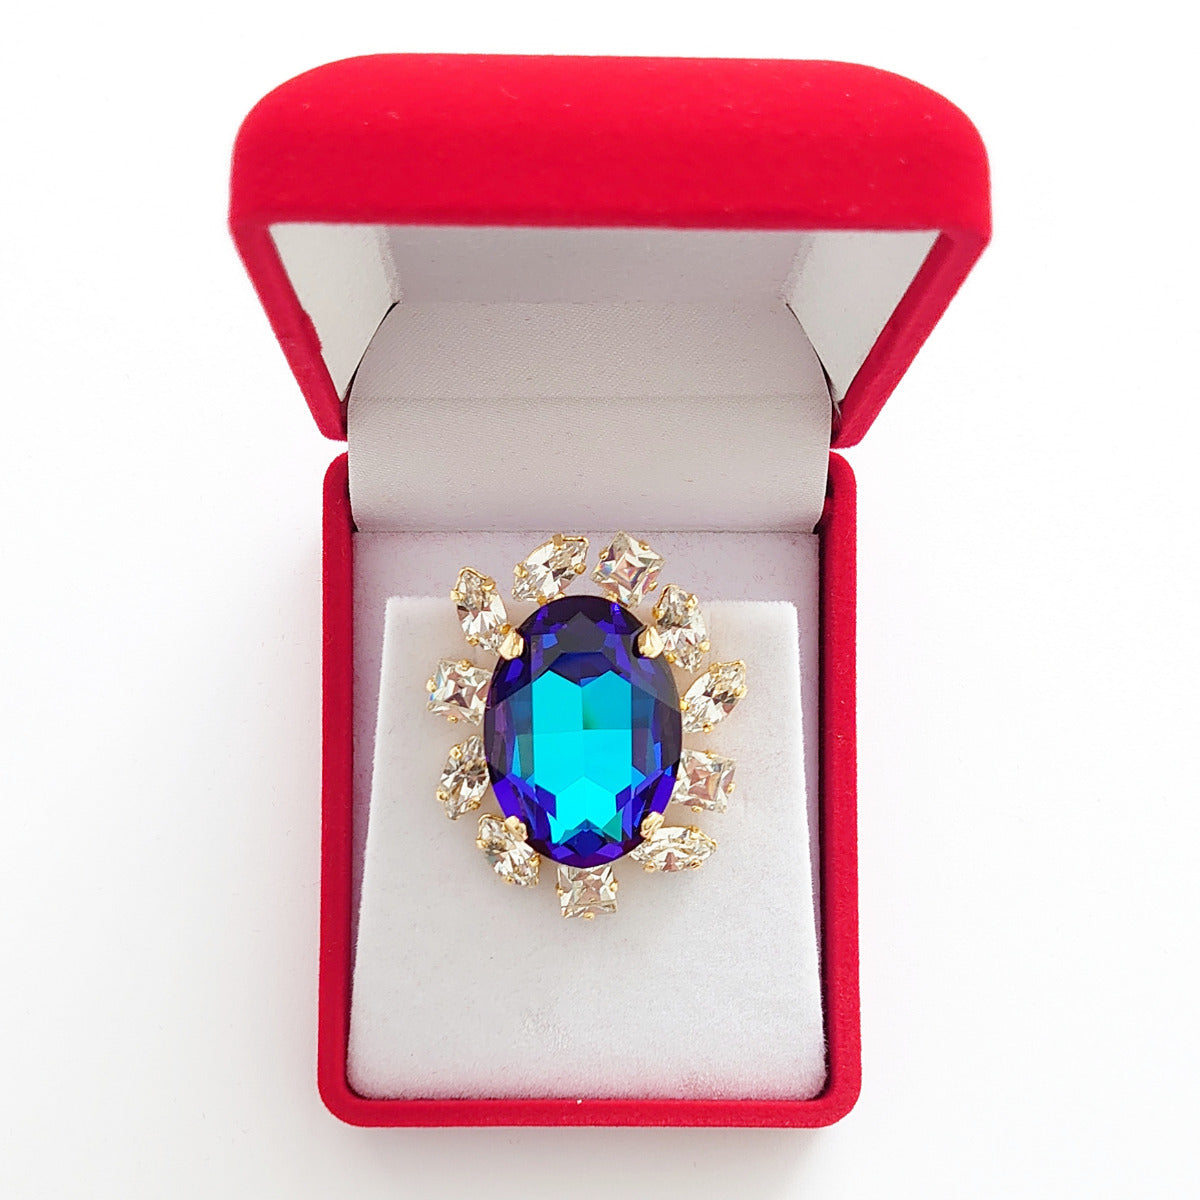 Crystal Dream Lapel Brooch - Royal Blue - Swarovski Crystals